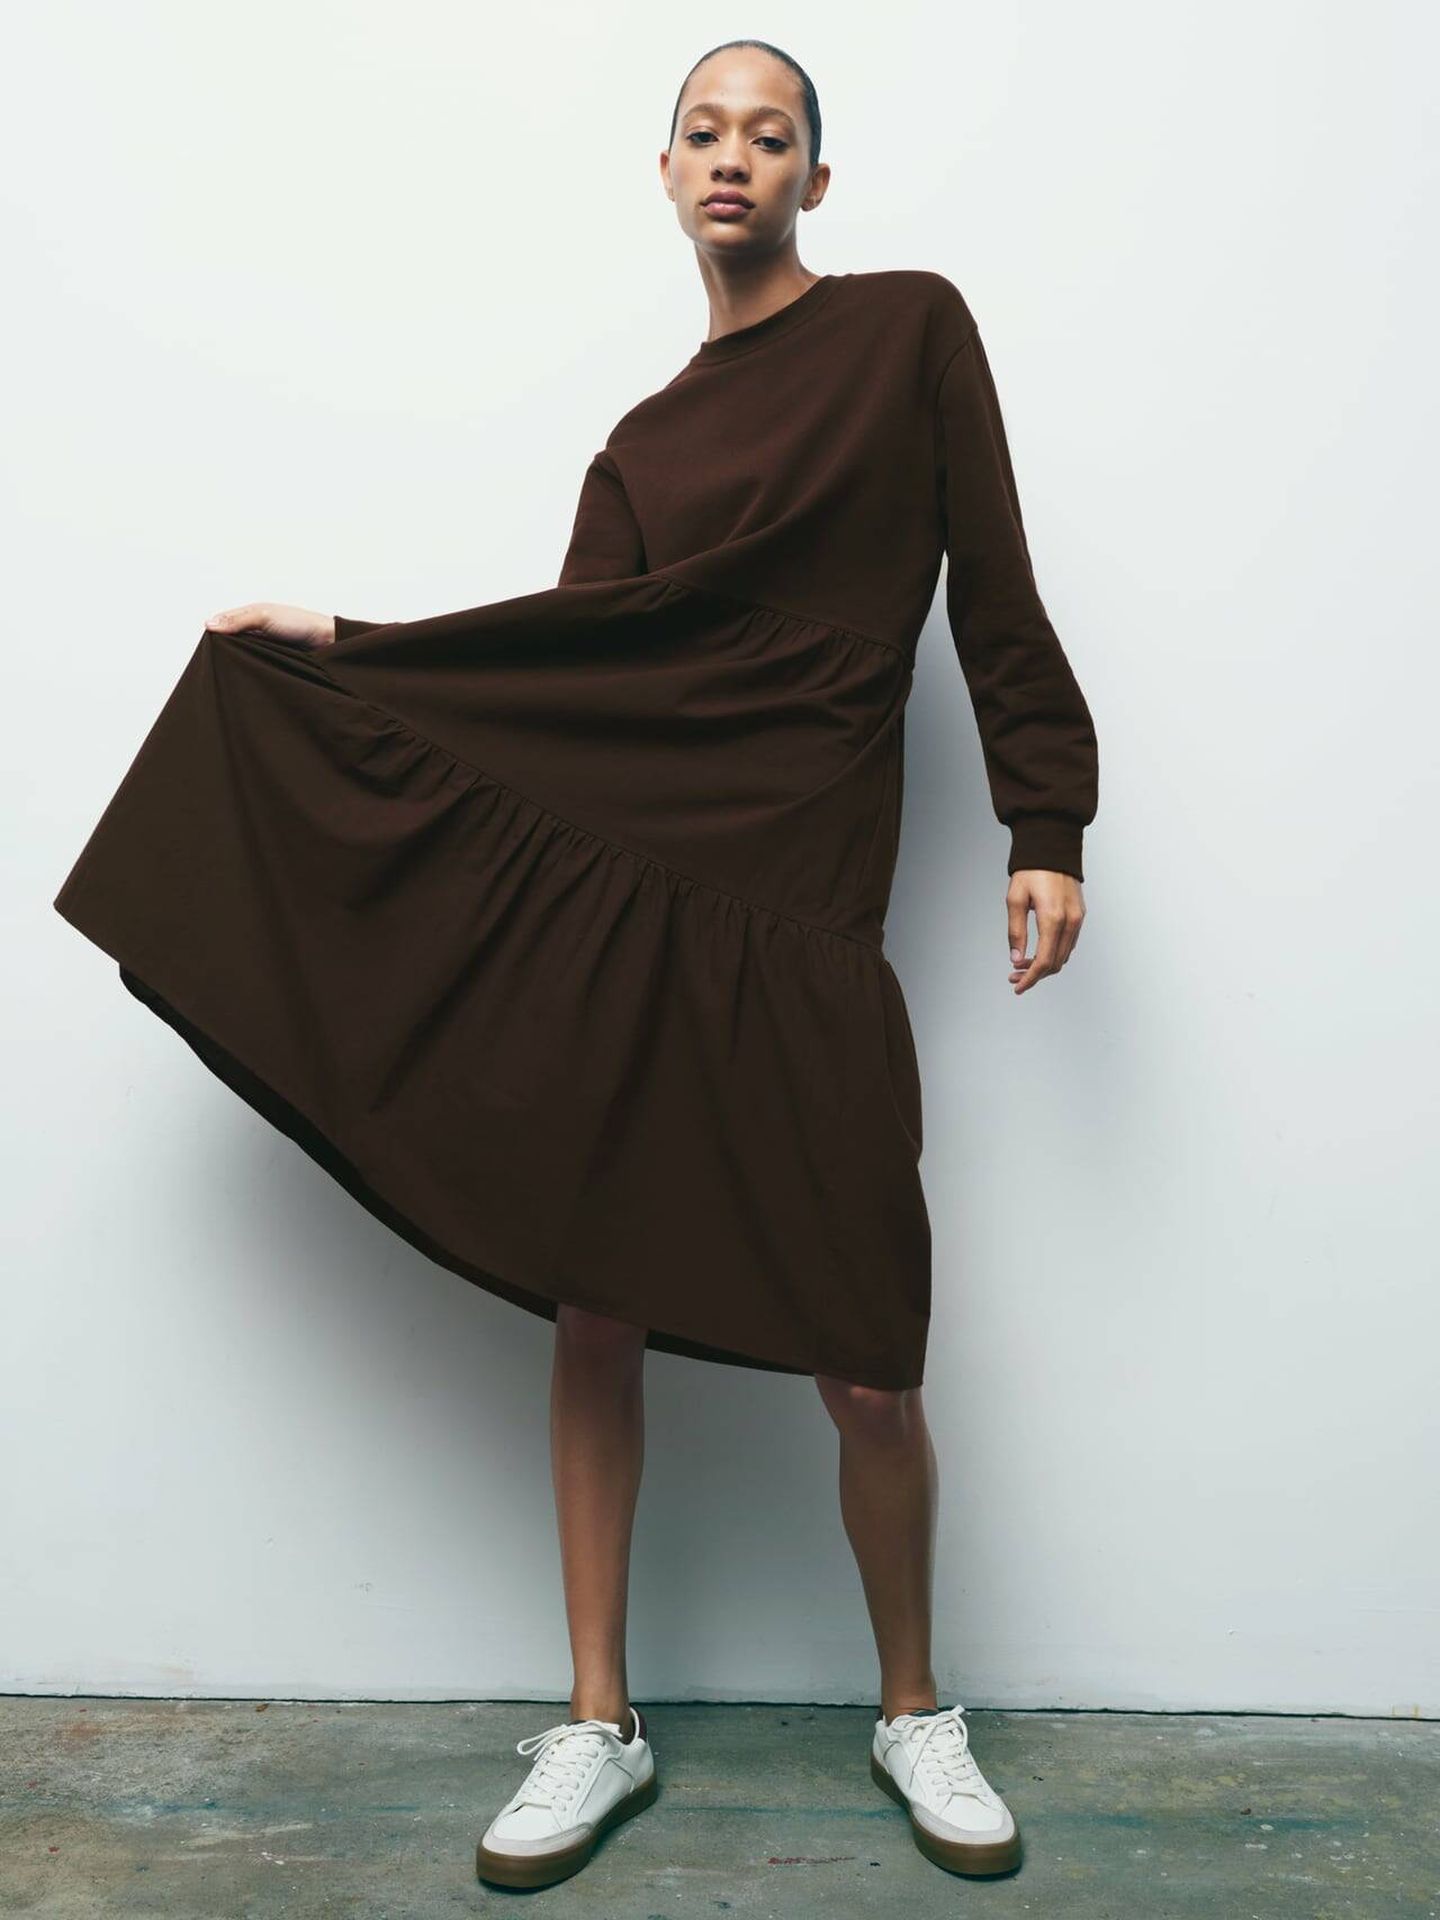 Vestido marrón de felpa. (Zara/Cortesía)